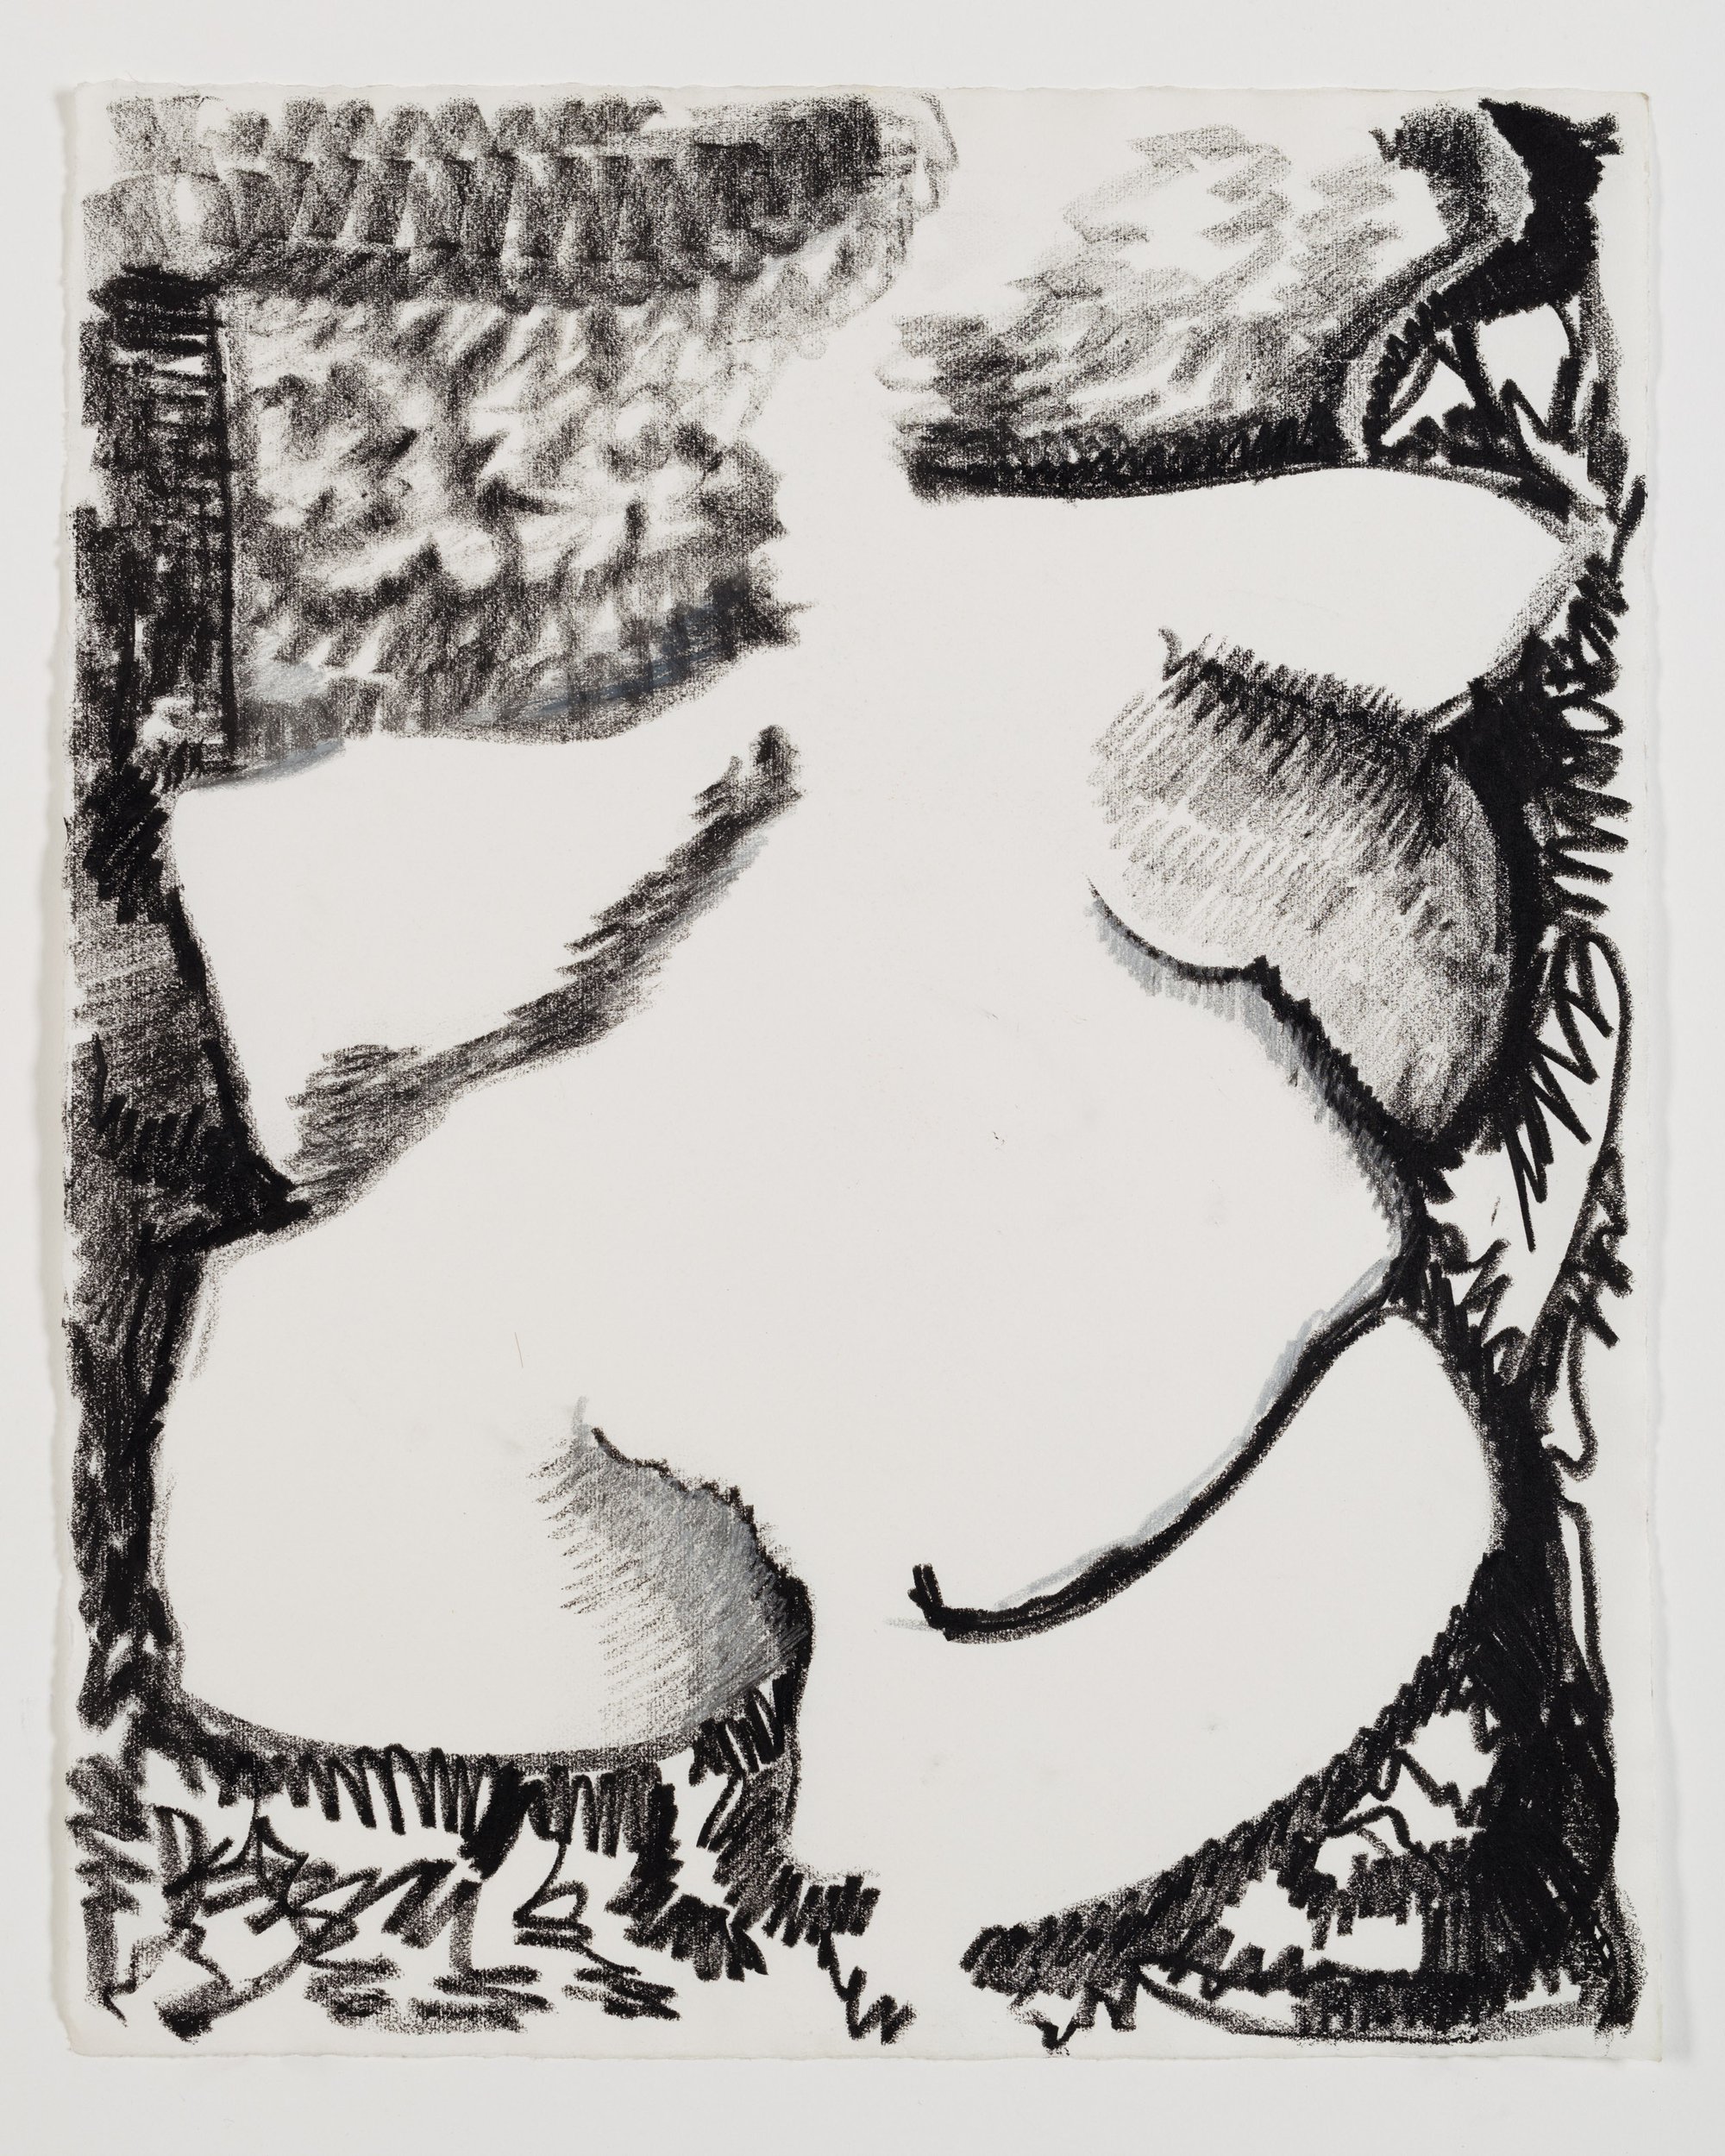 Liliane Lijn, Body, crayon on paper, 52.5 x 43 cm (framed), 1985